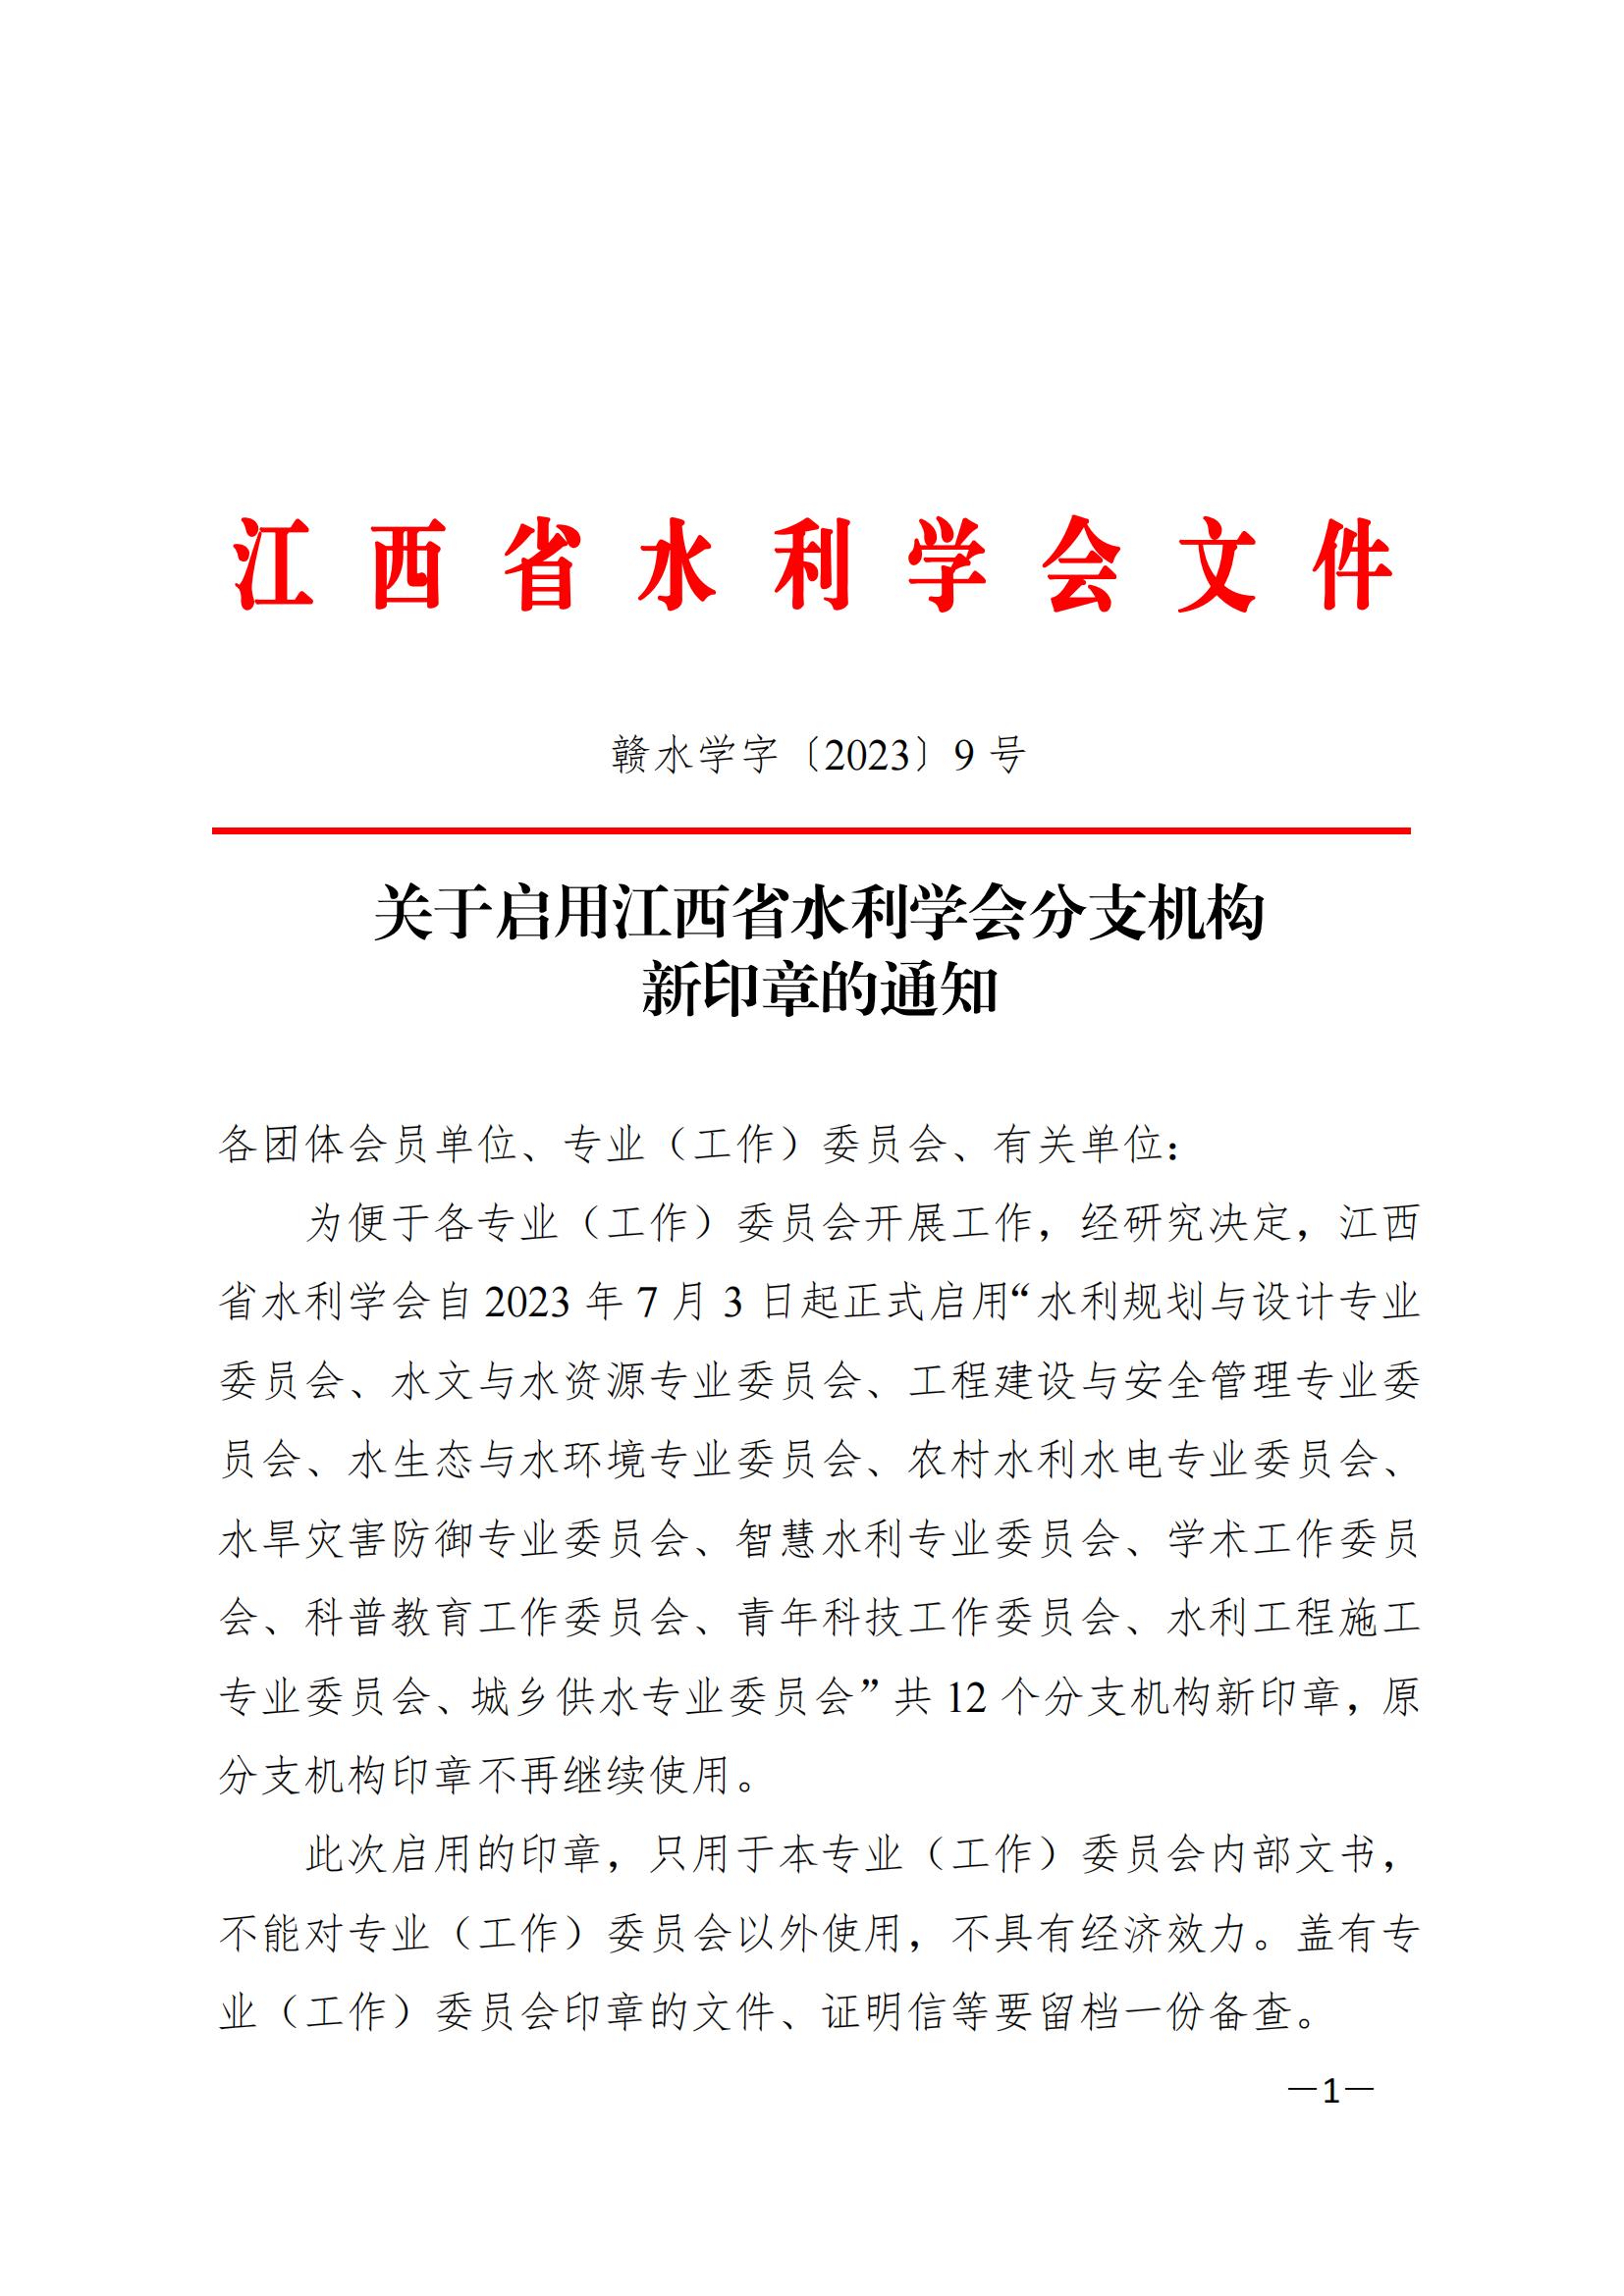 关于启用江西省水利学会分支机构新印章的通知_00.jpg